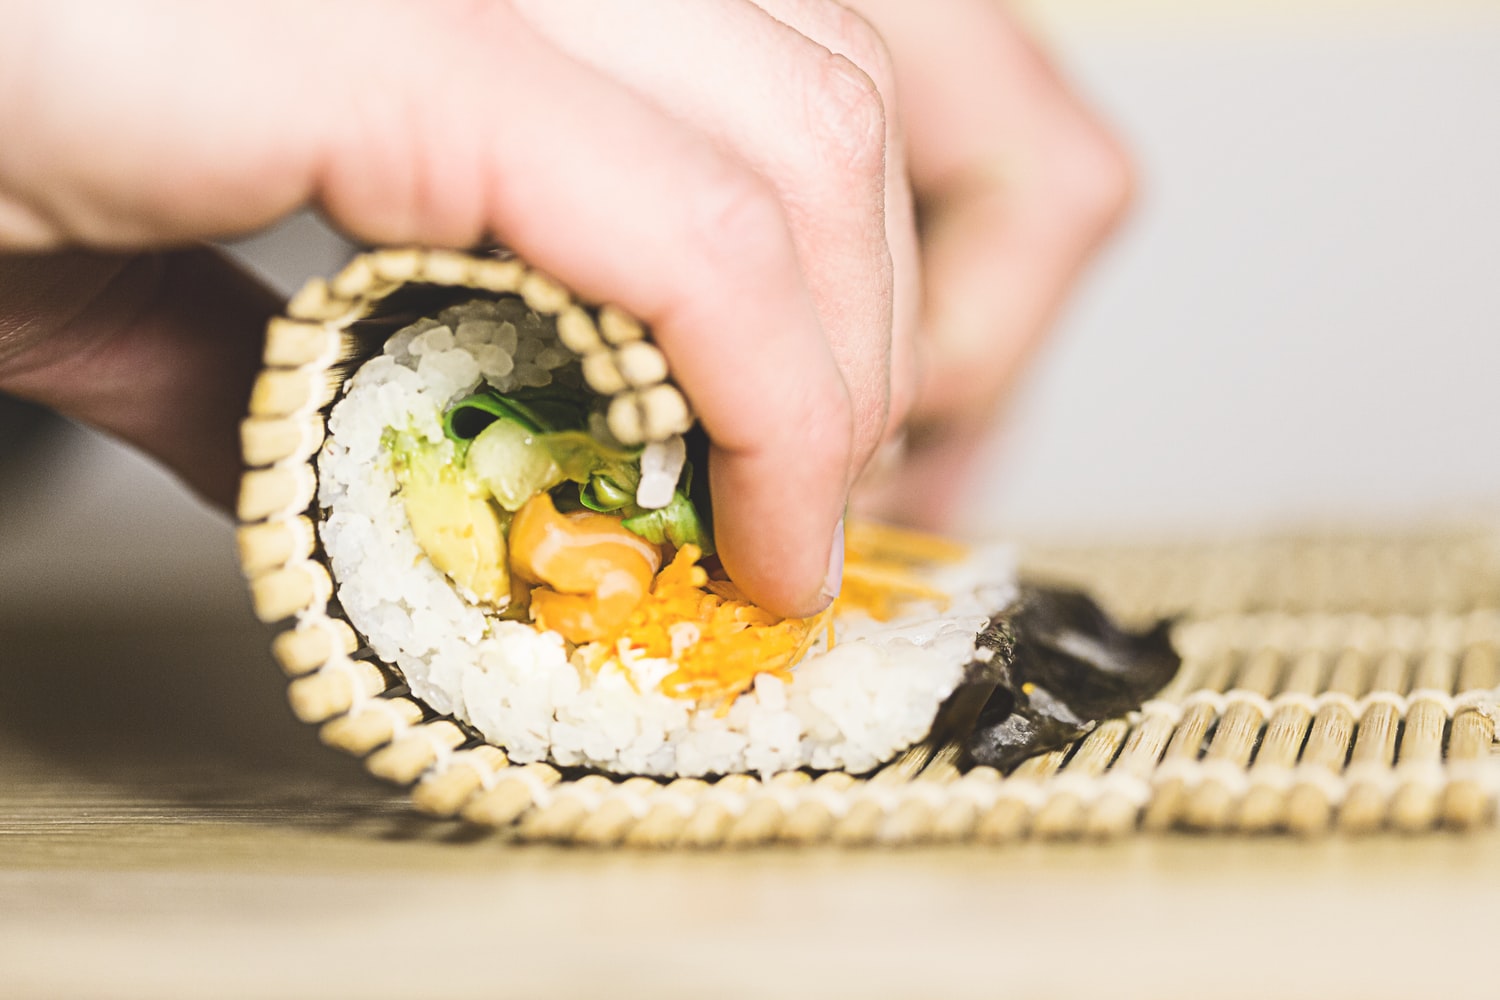 Come fare il sushi in casa con i giusti casalinghi - Gioia della Casa -  Casalinghi , Design e Benessere in casa